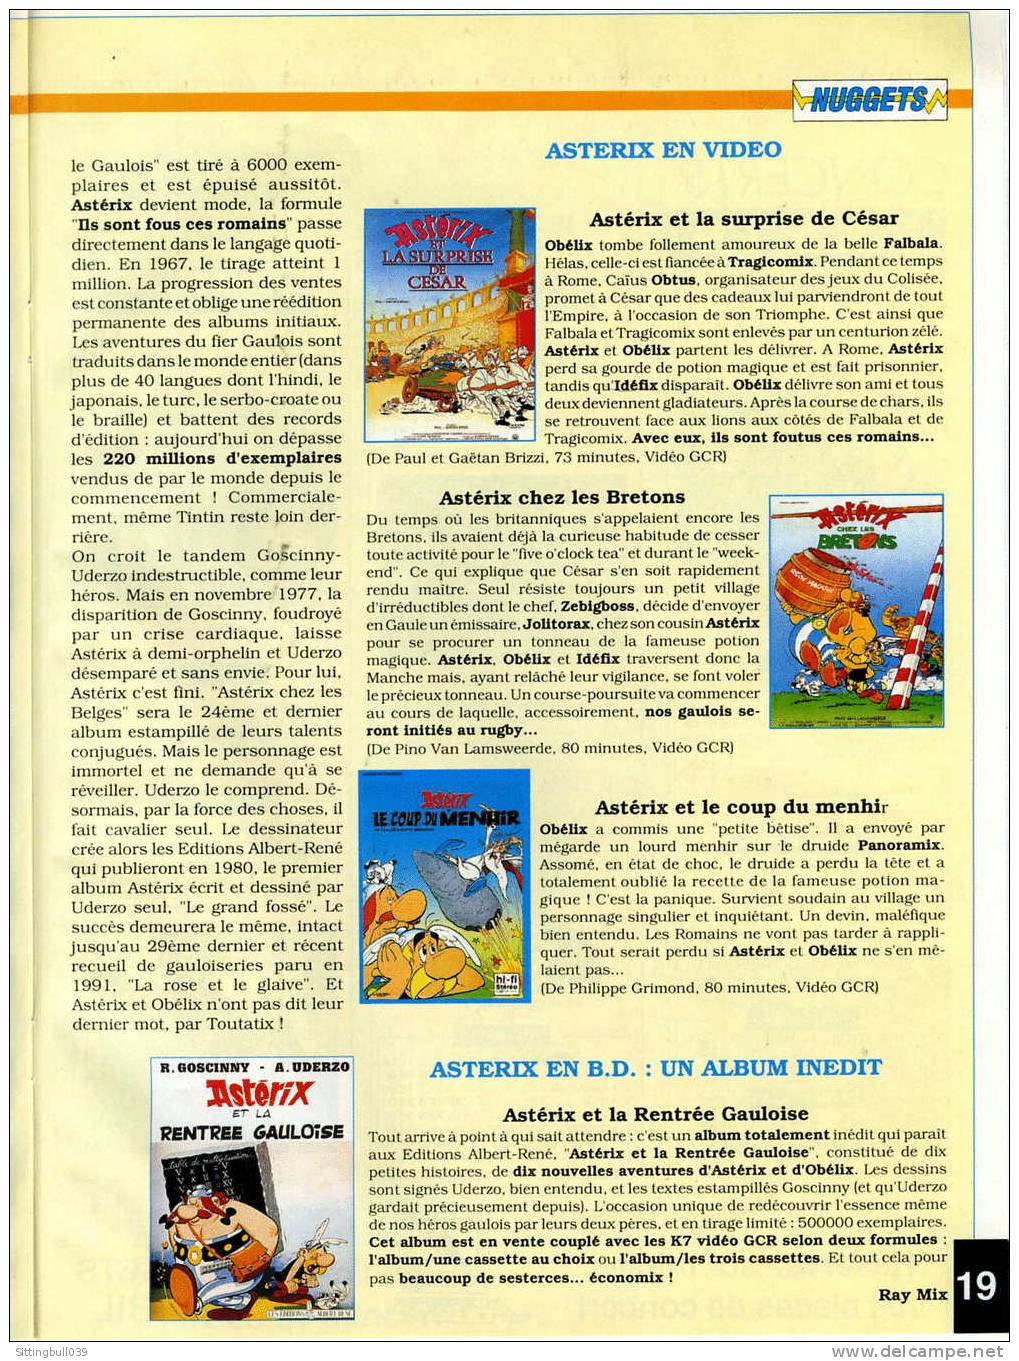 ASTERIX ET LA RENTREE GAULOISE DANS LE MAGAZINE MULTITOP N° 40. LE MAGAZINE DE TOUTES LES MUSIQUES. JUIN 1993. - Asterix